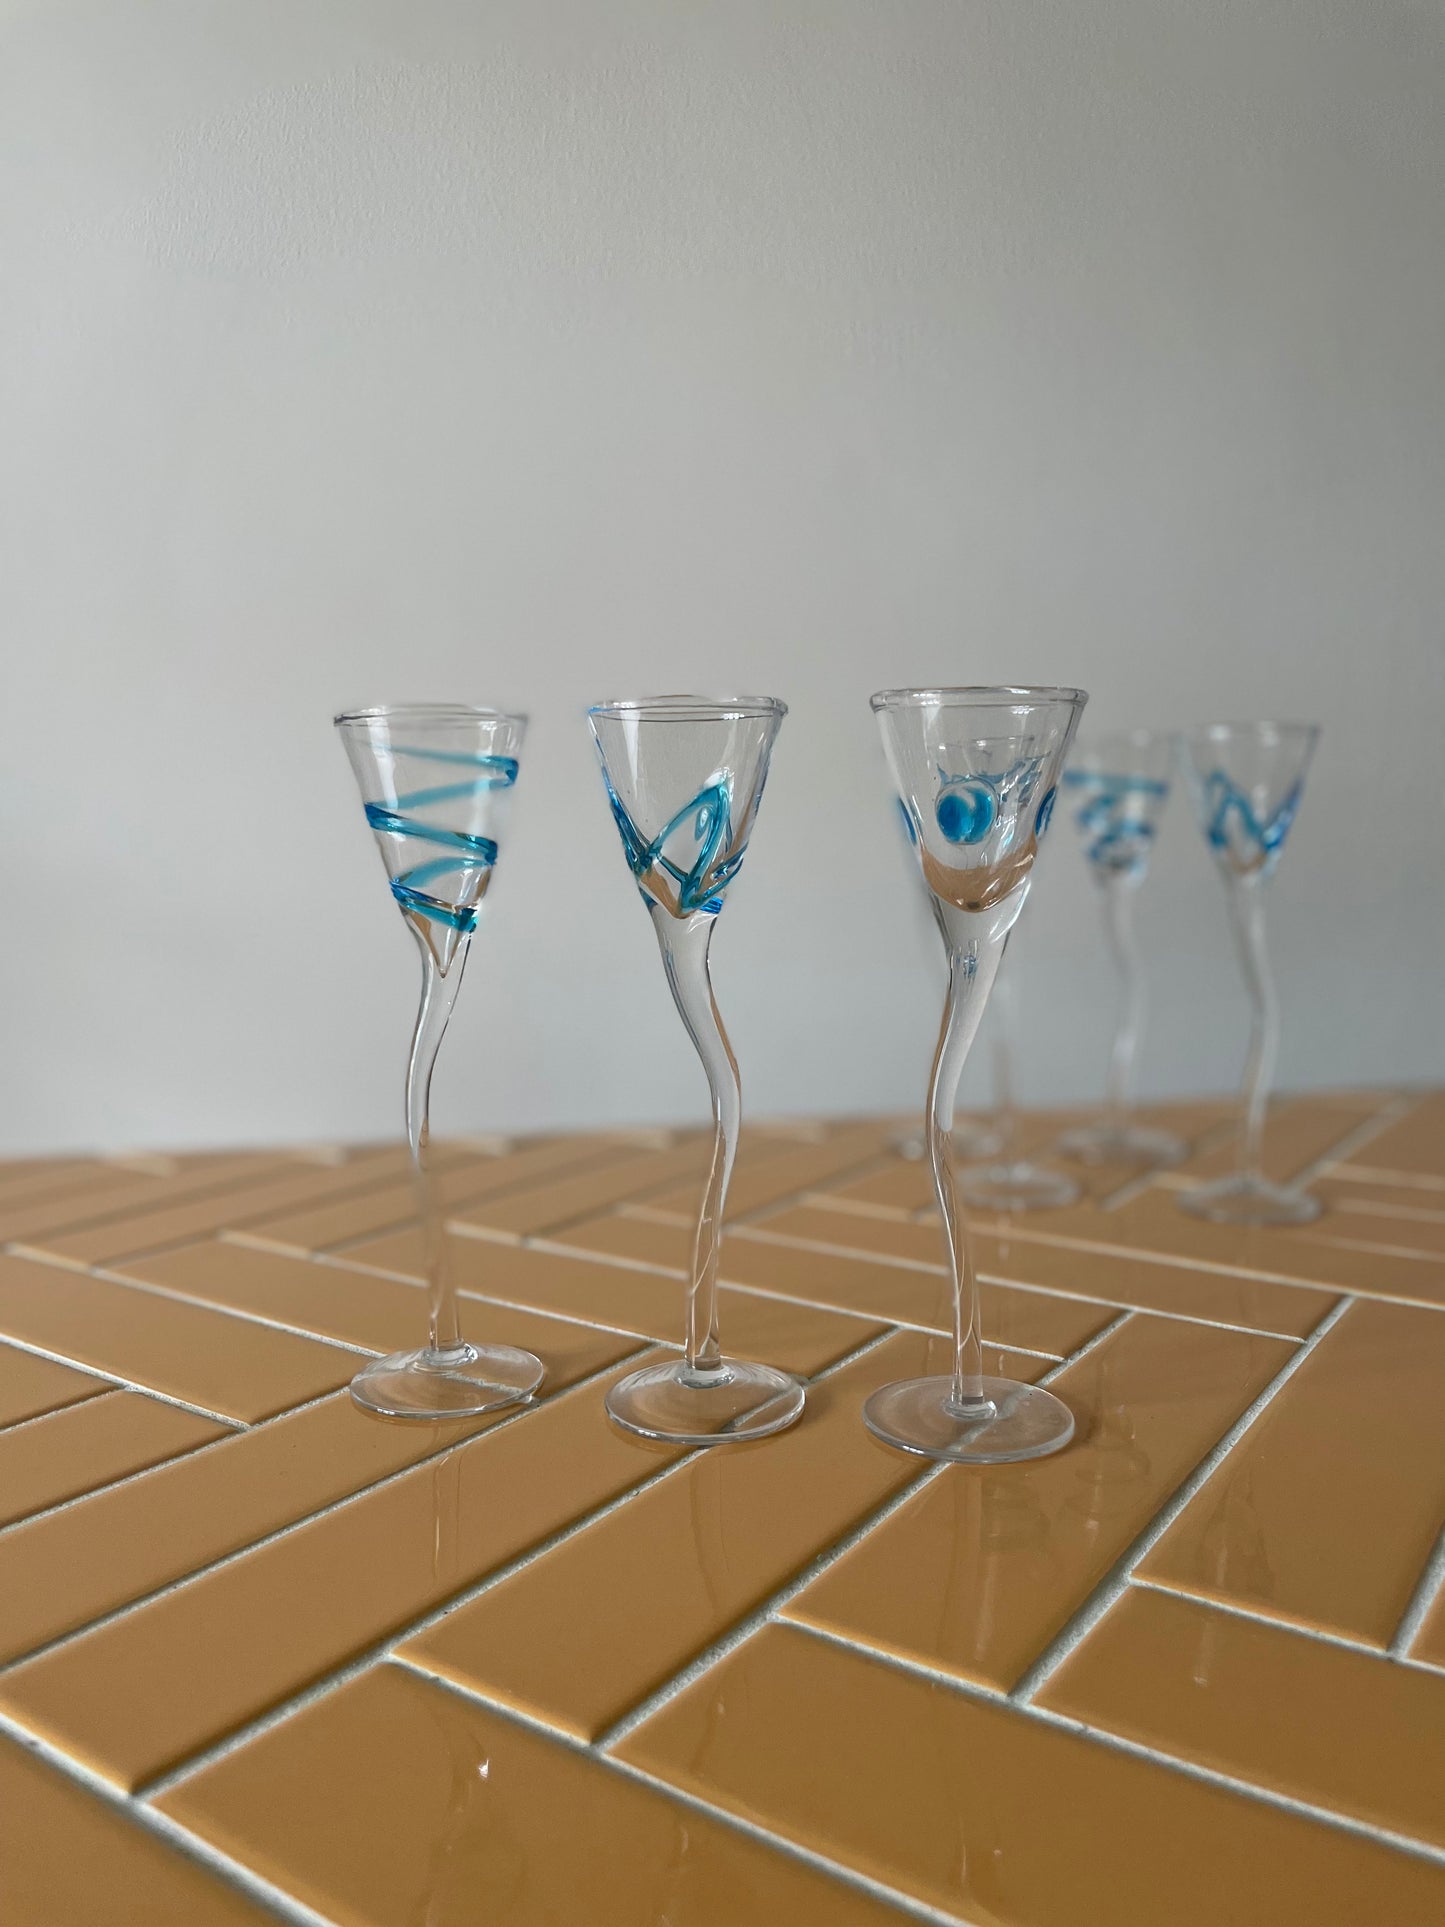 Handmade shot glasses